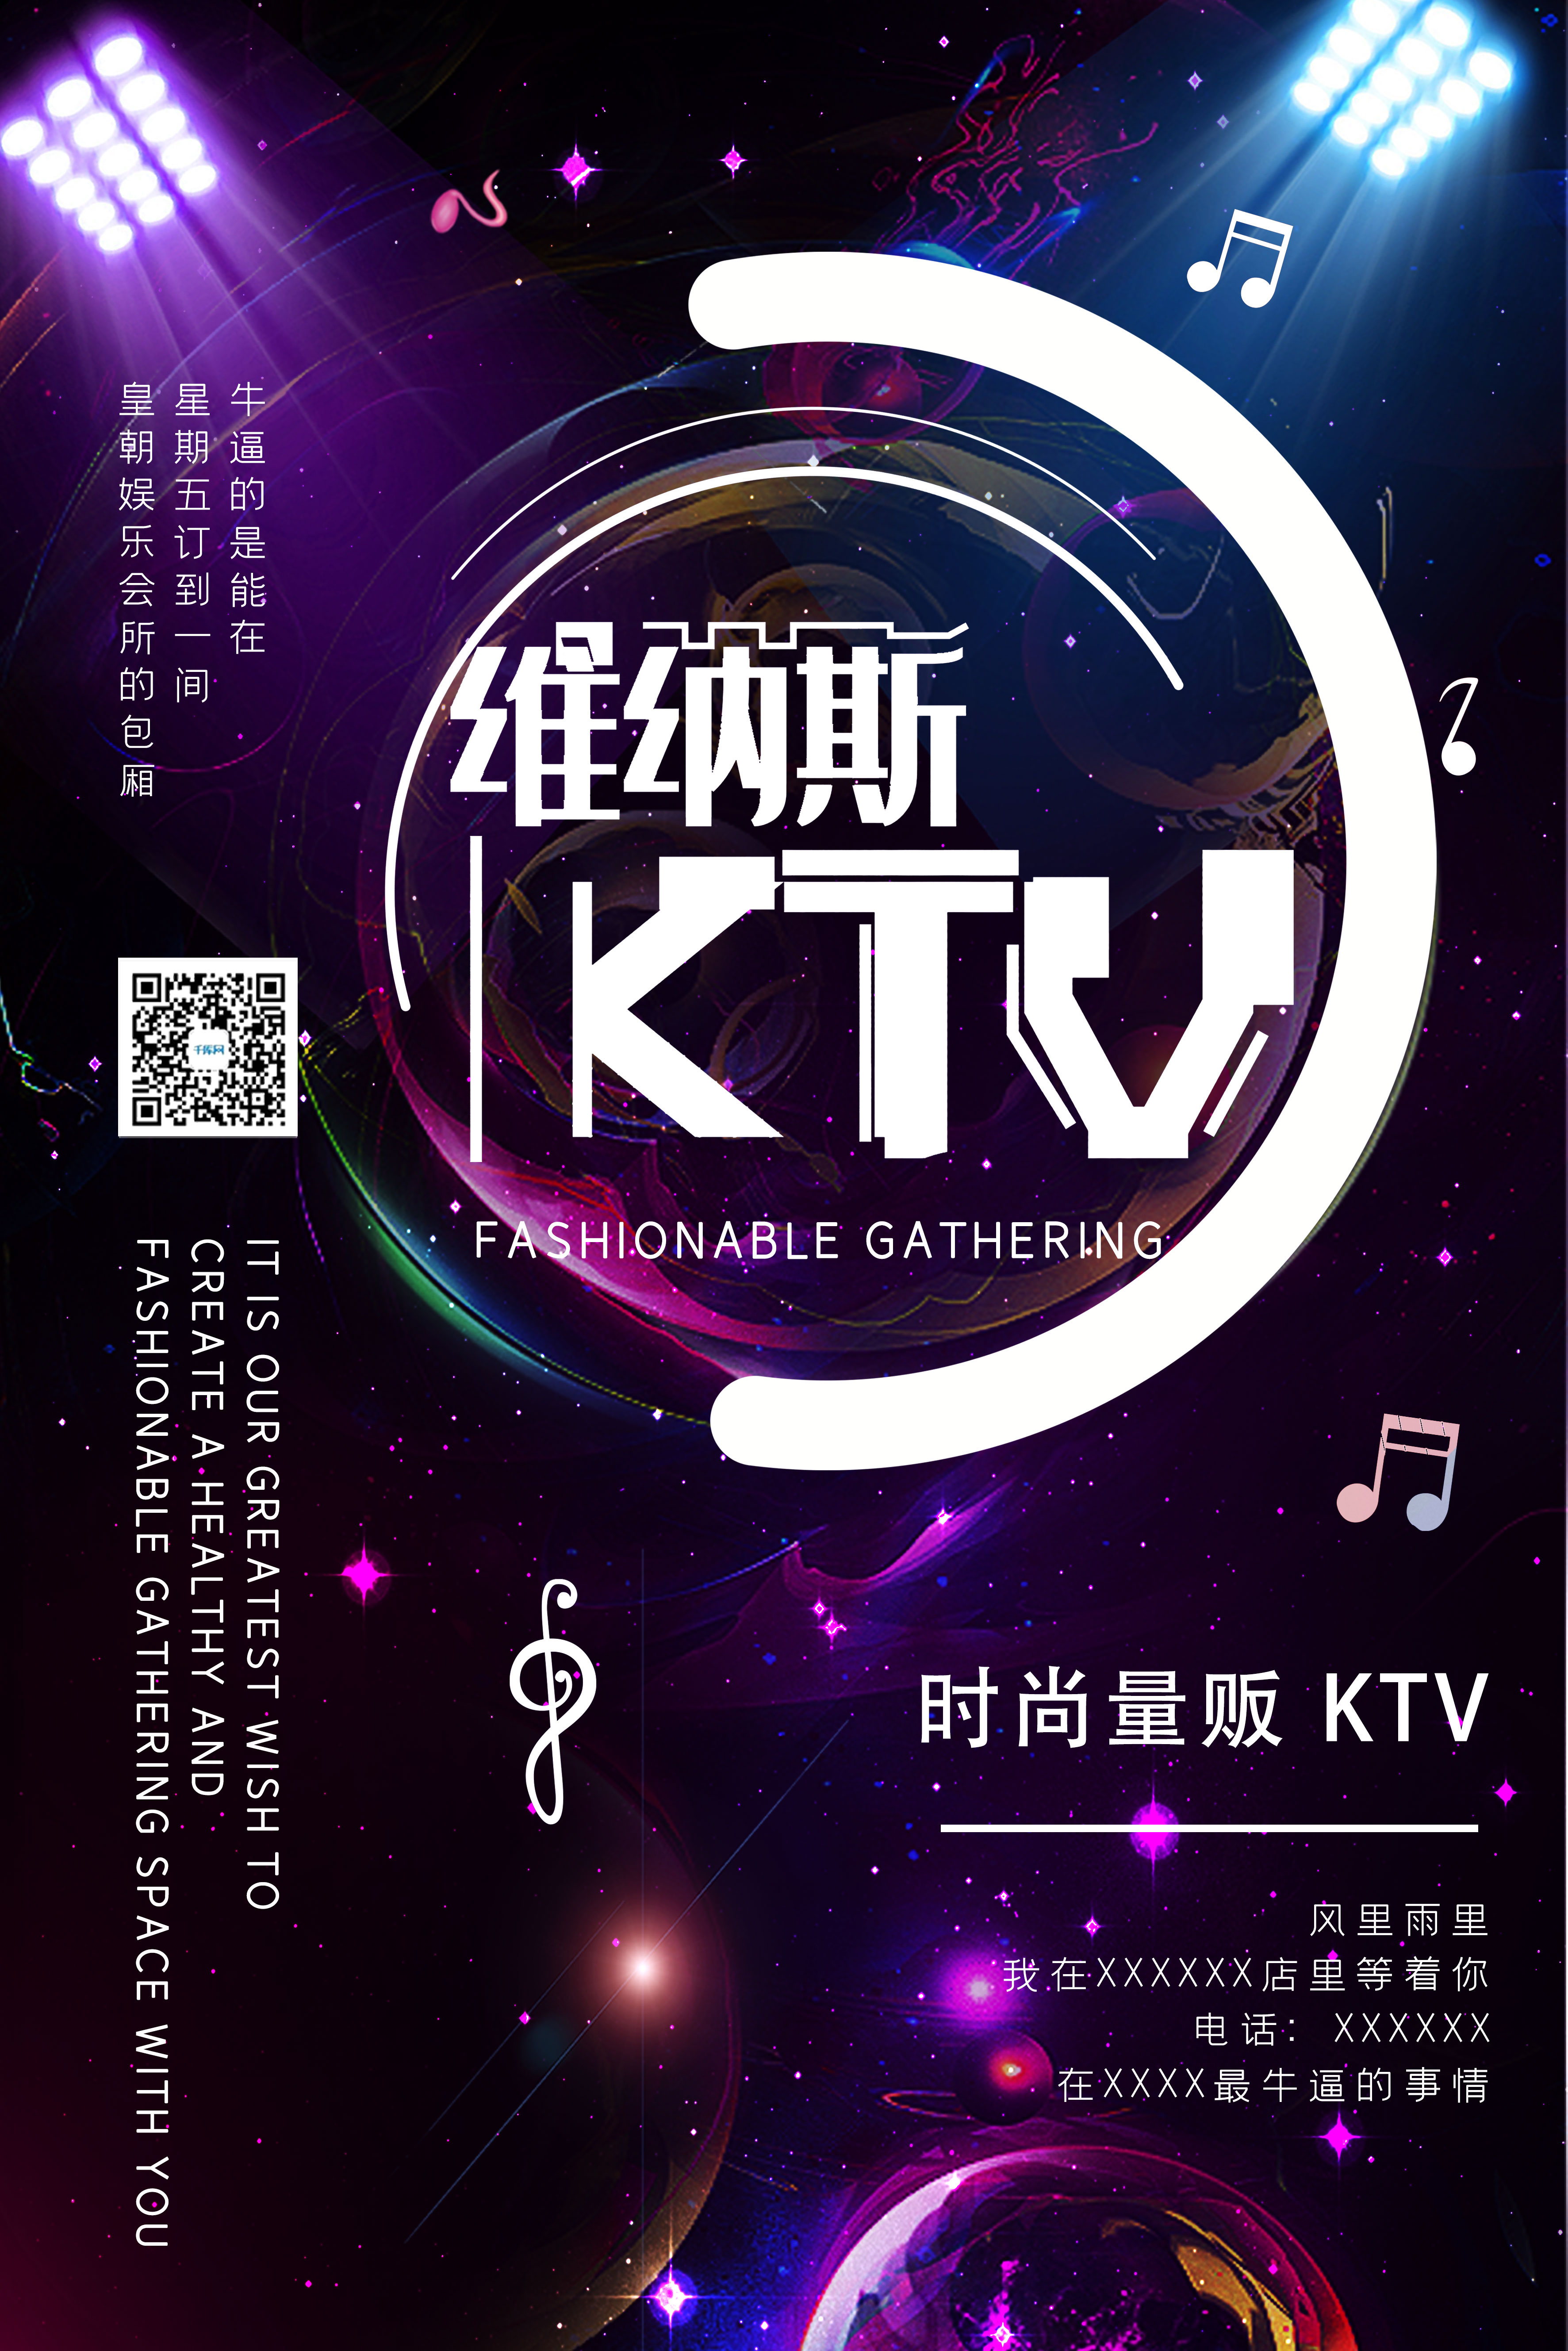 简约大气紫色娱乐夜店KTV宣传海报图片